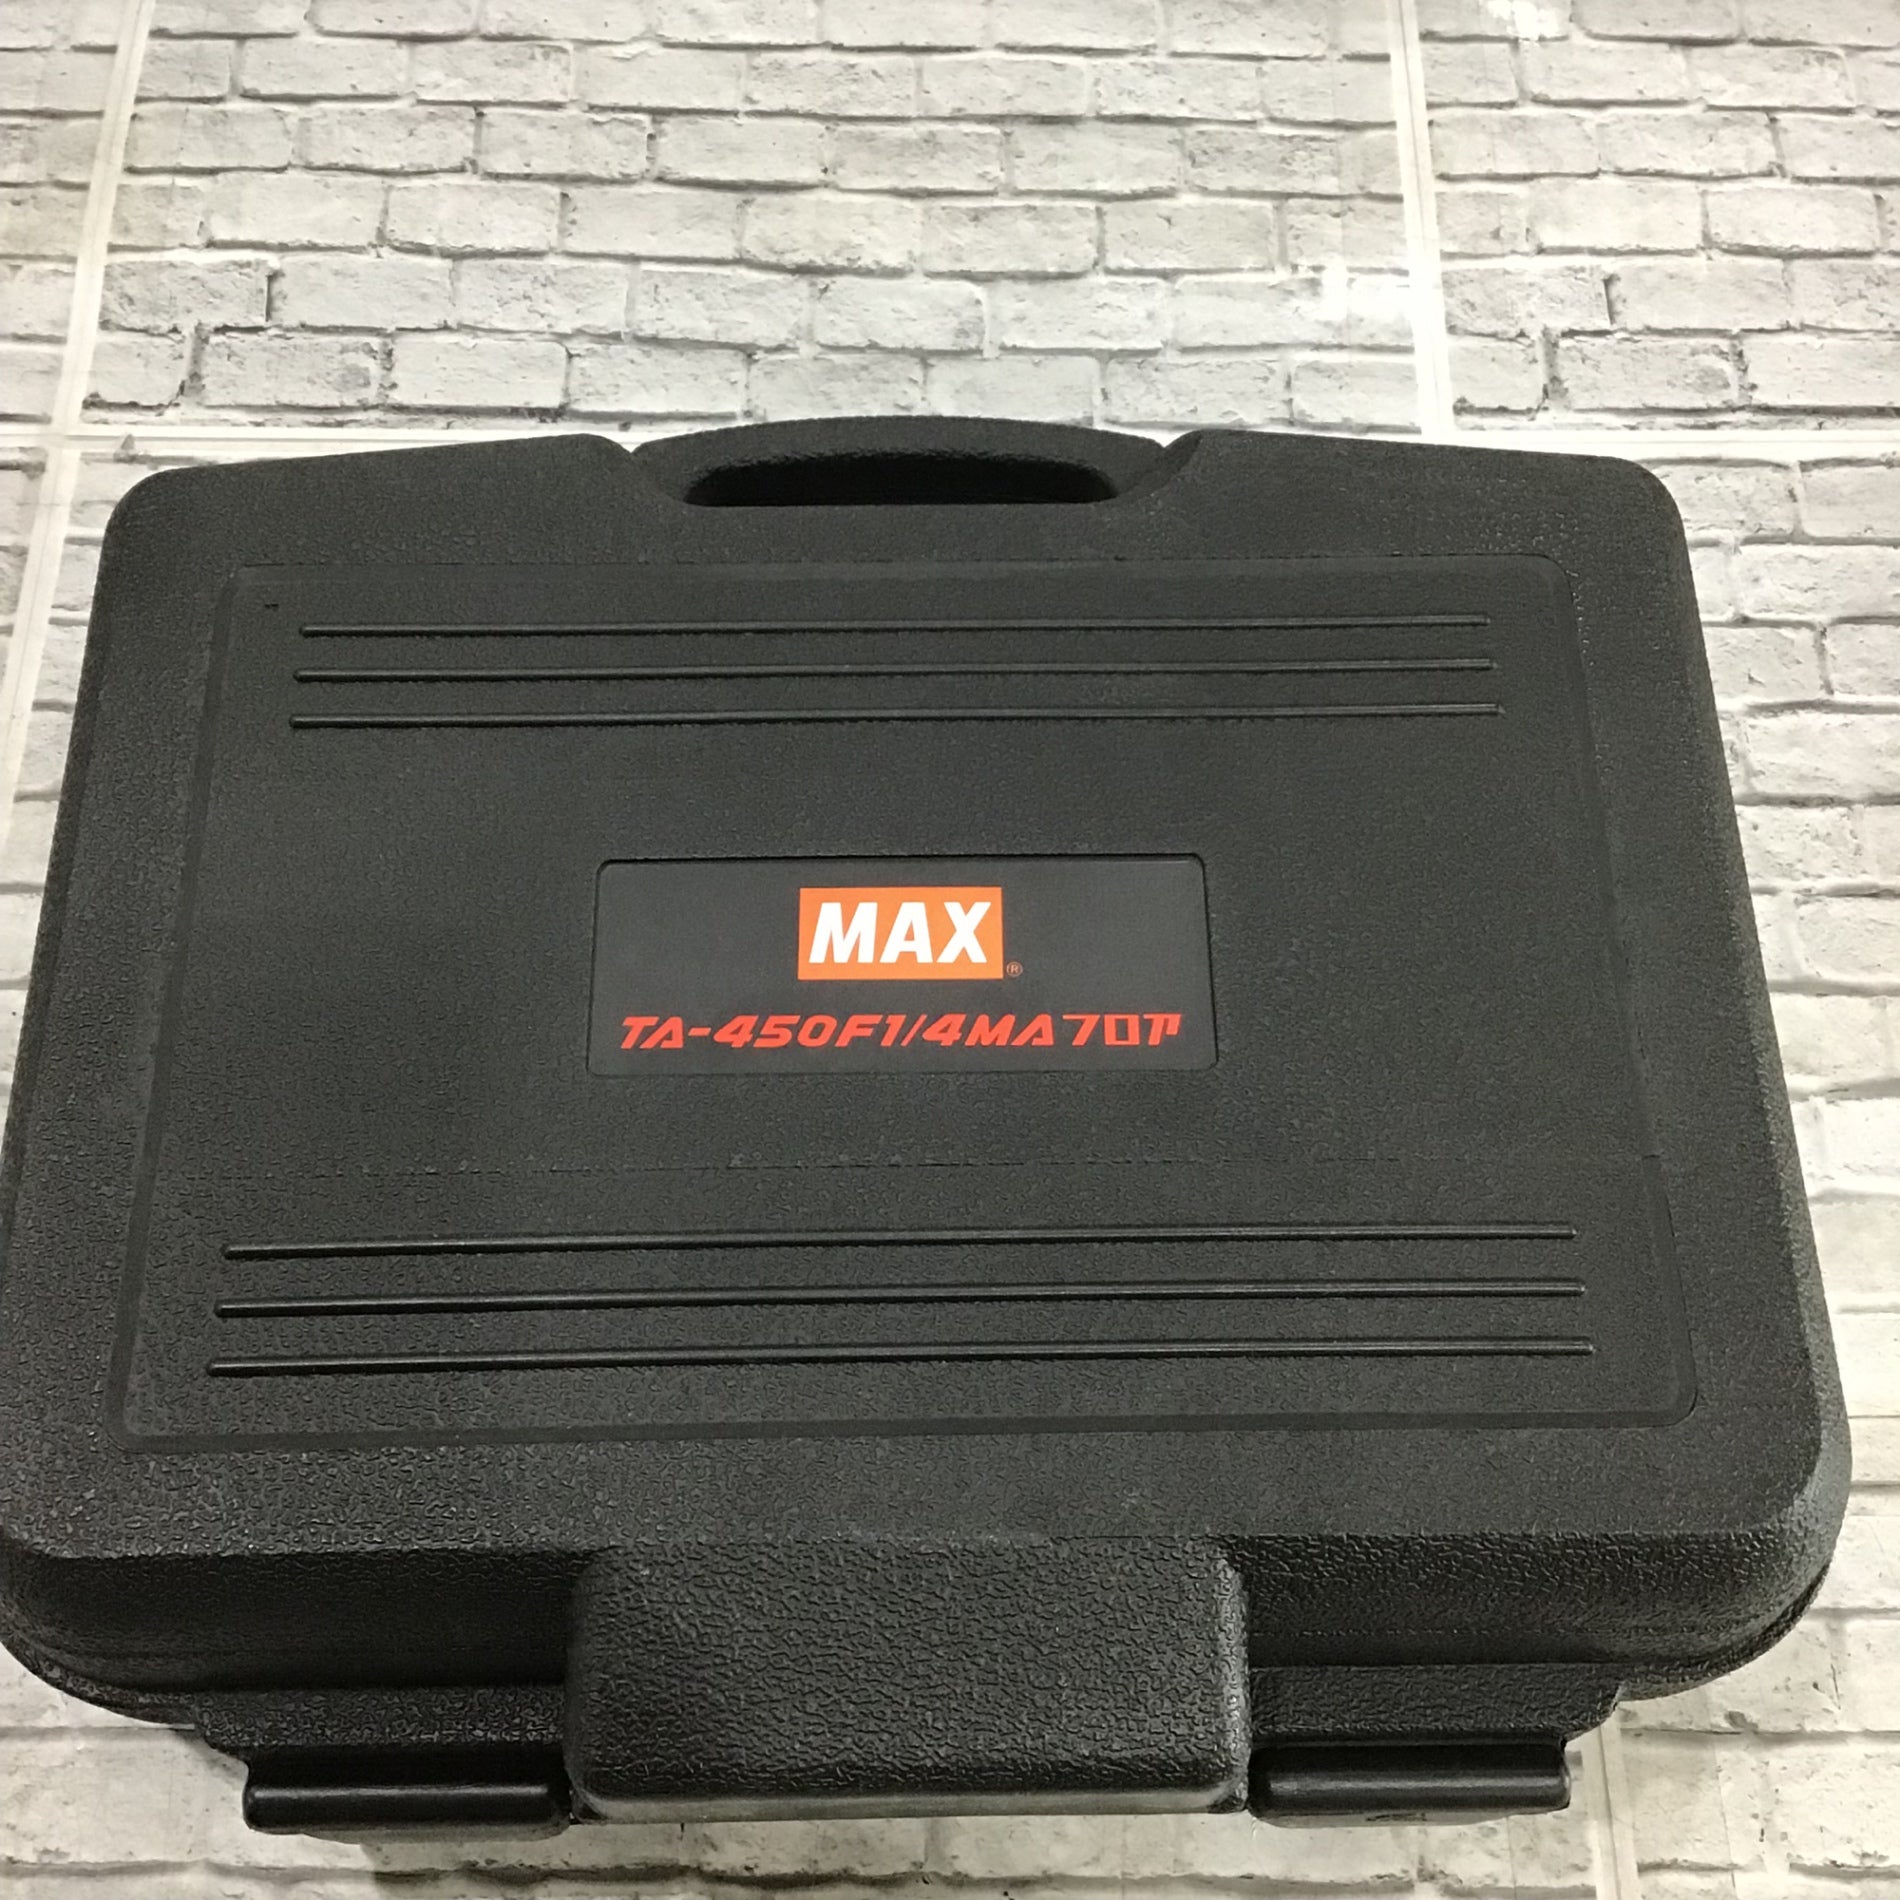 〇マックス(MAX) 常圧フロアタッカ TA-450F1/4MAフロア【川口店